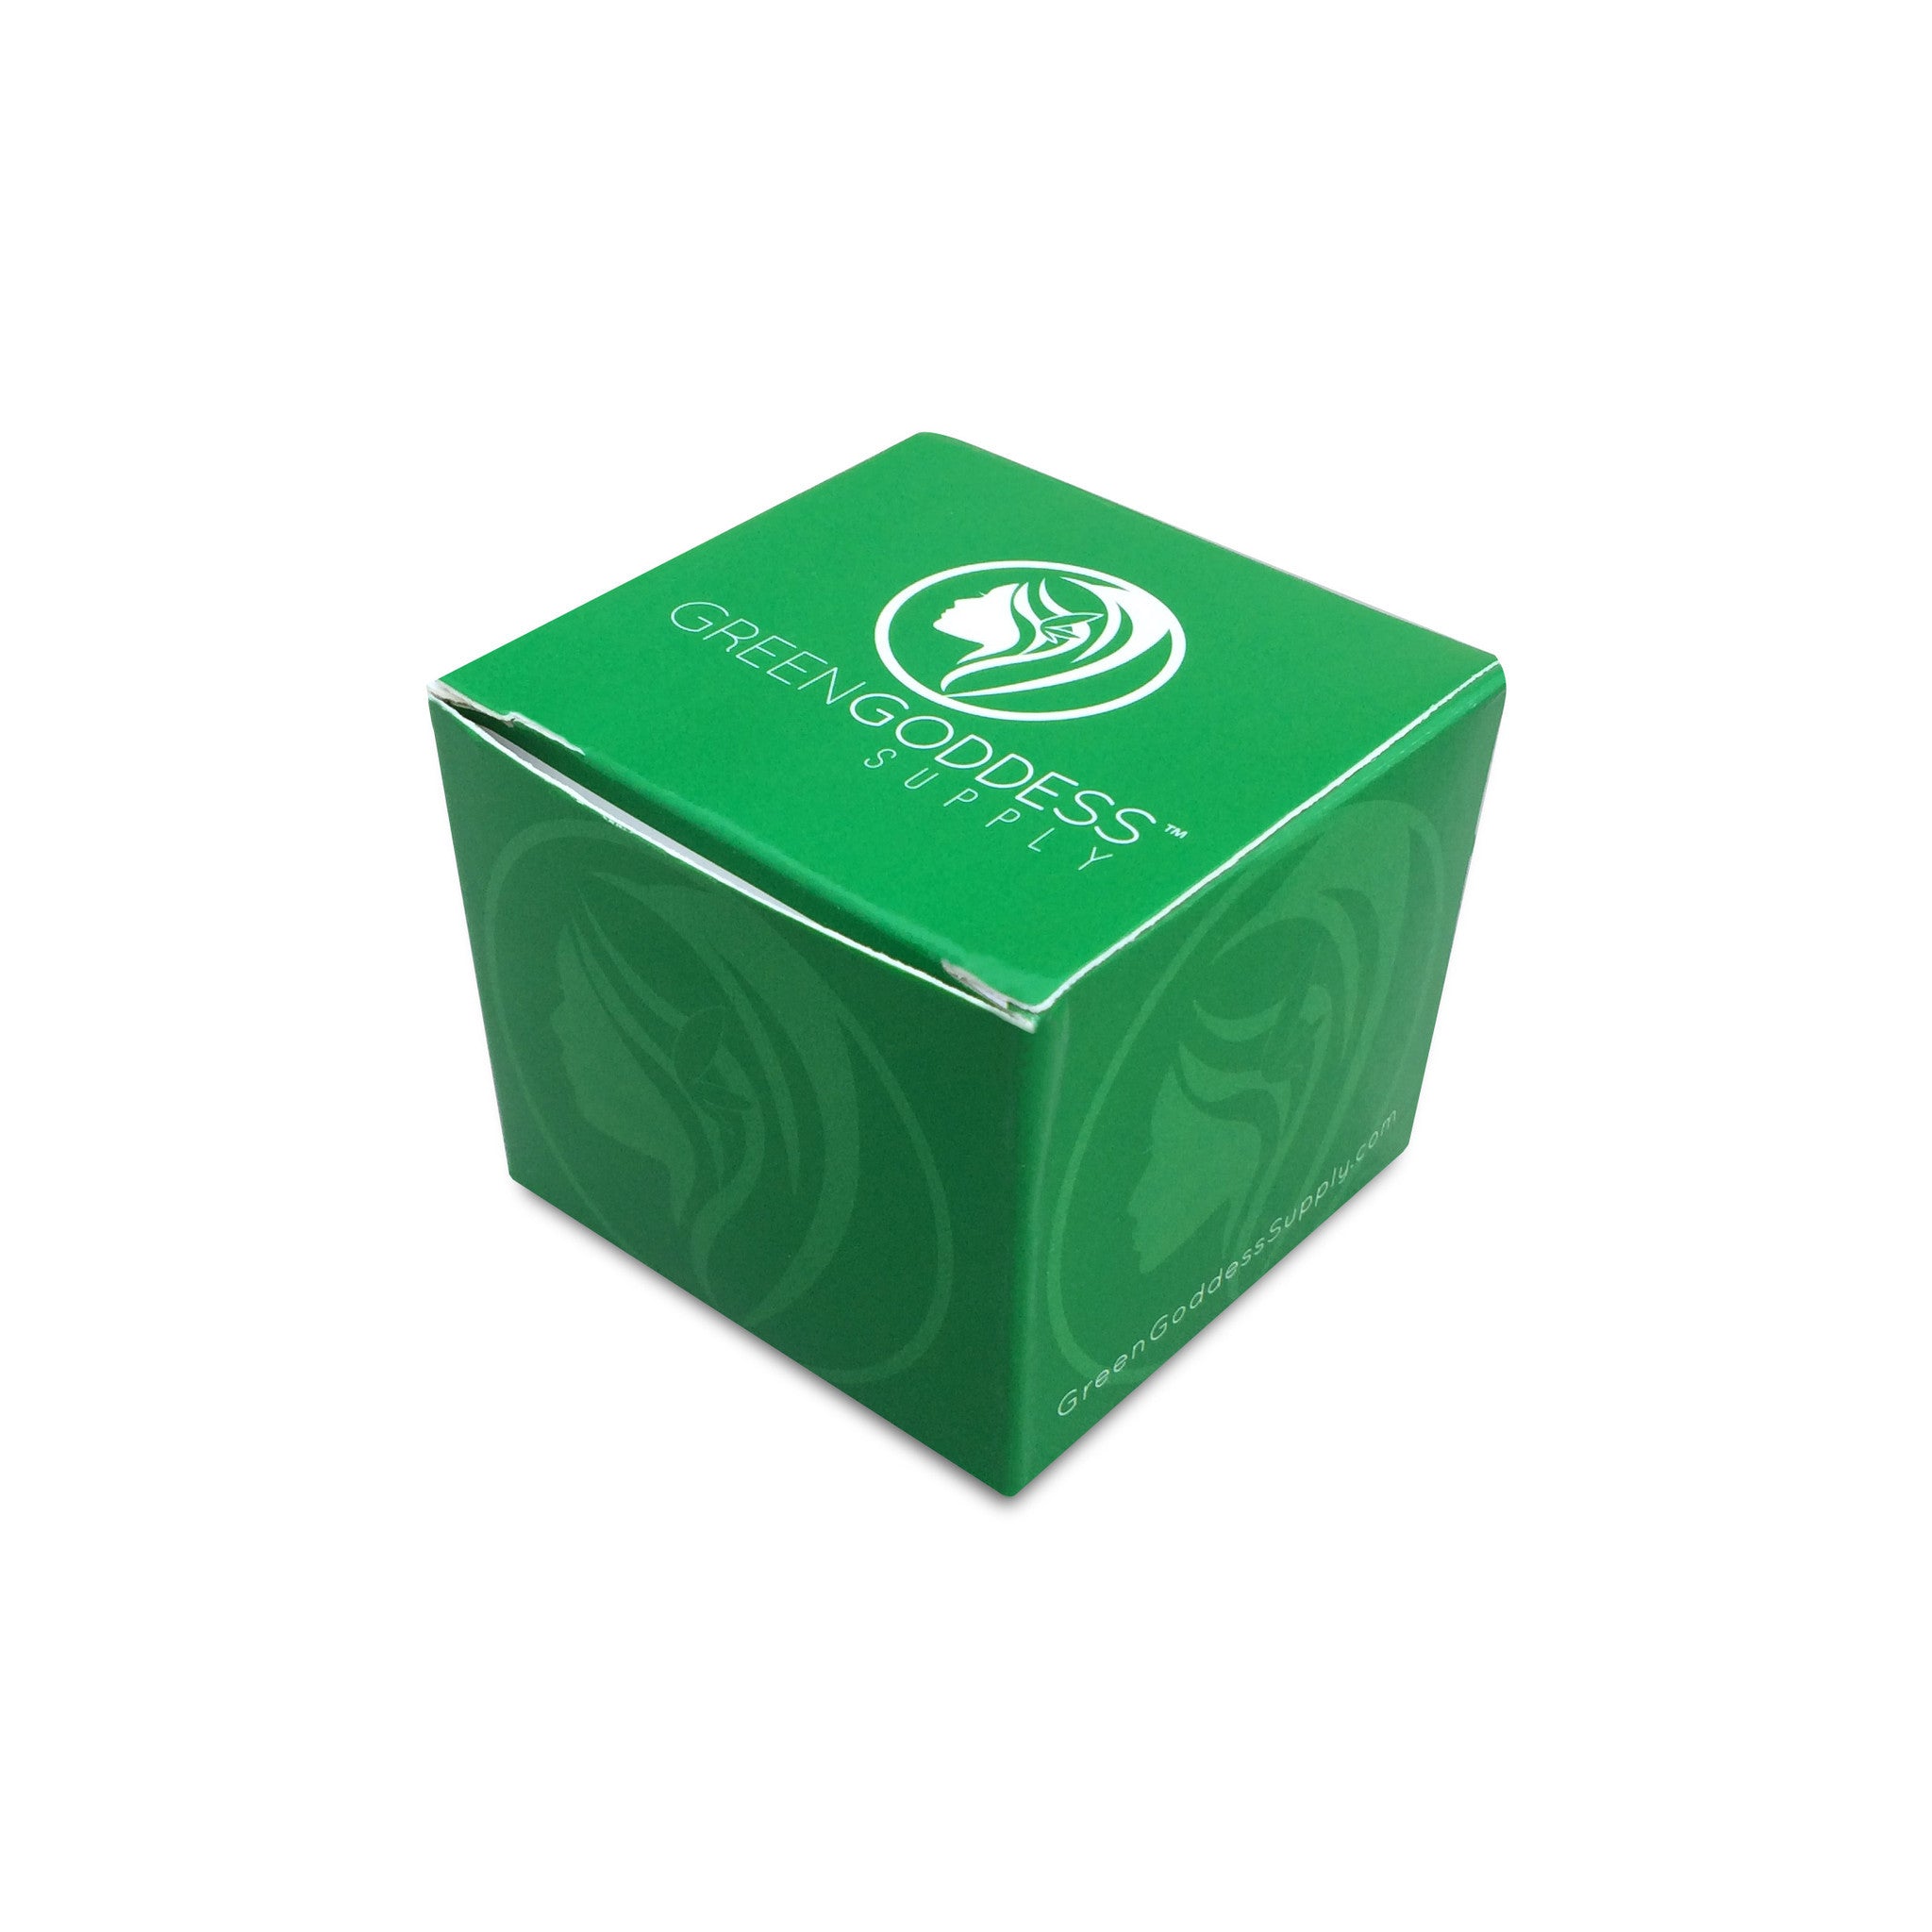 2.5" 4-Piece Aluminum Grinder - Green - Green Goddess Supply